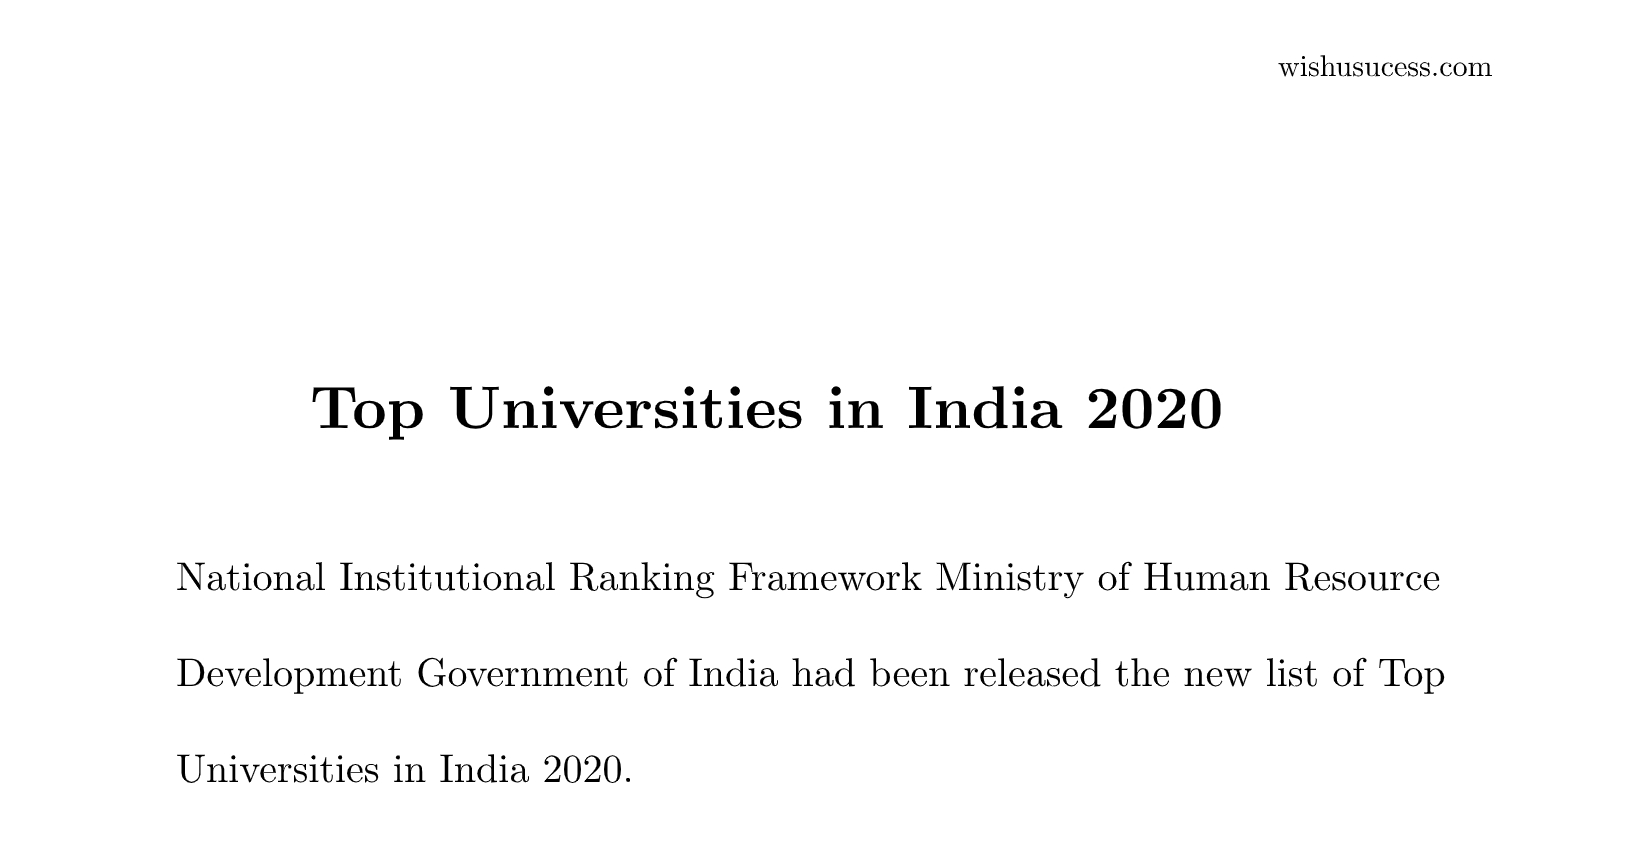 Top Universities in India 2020